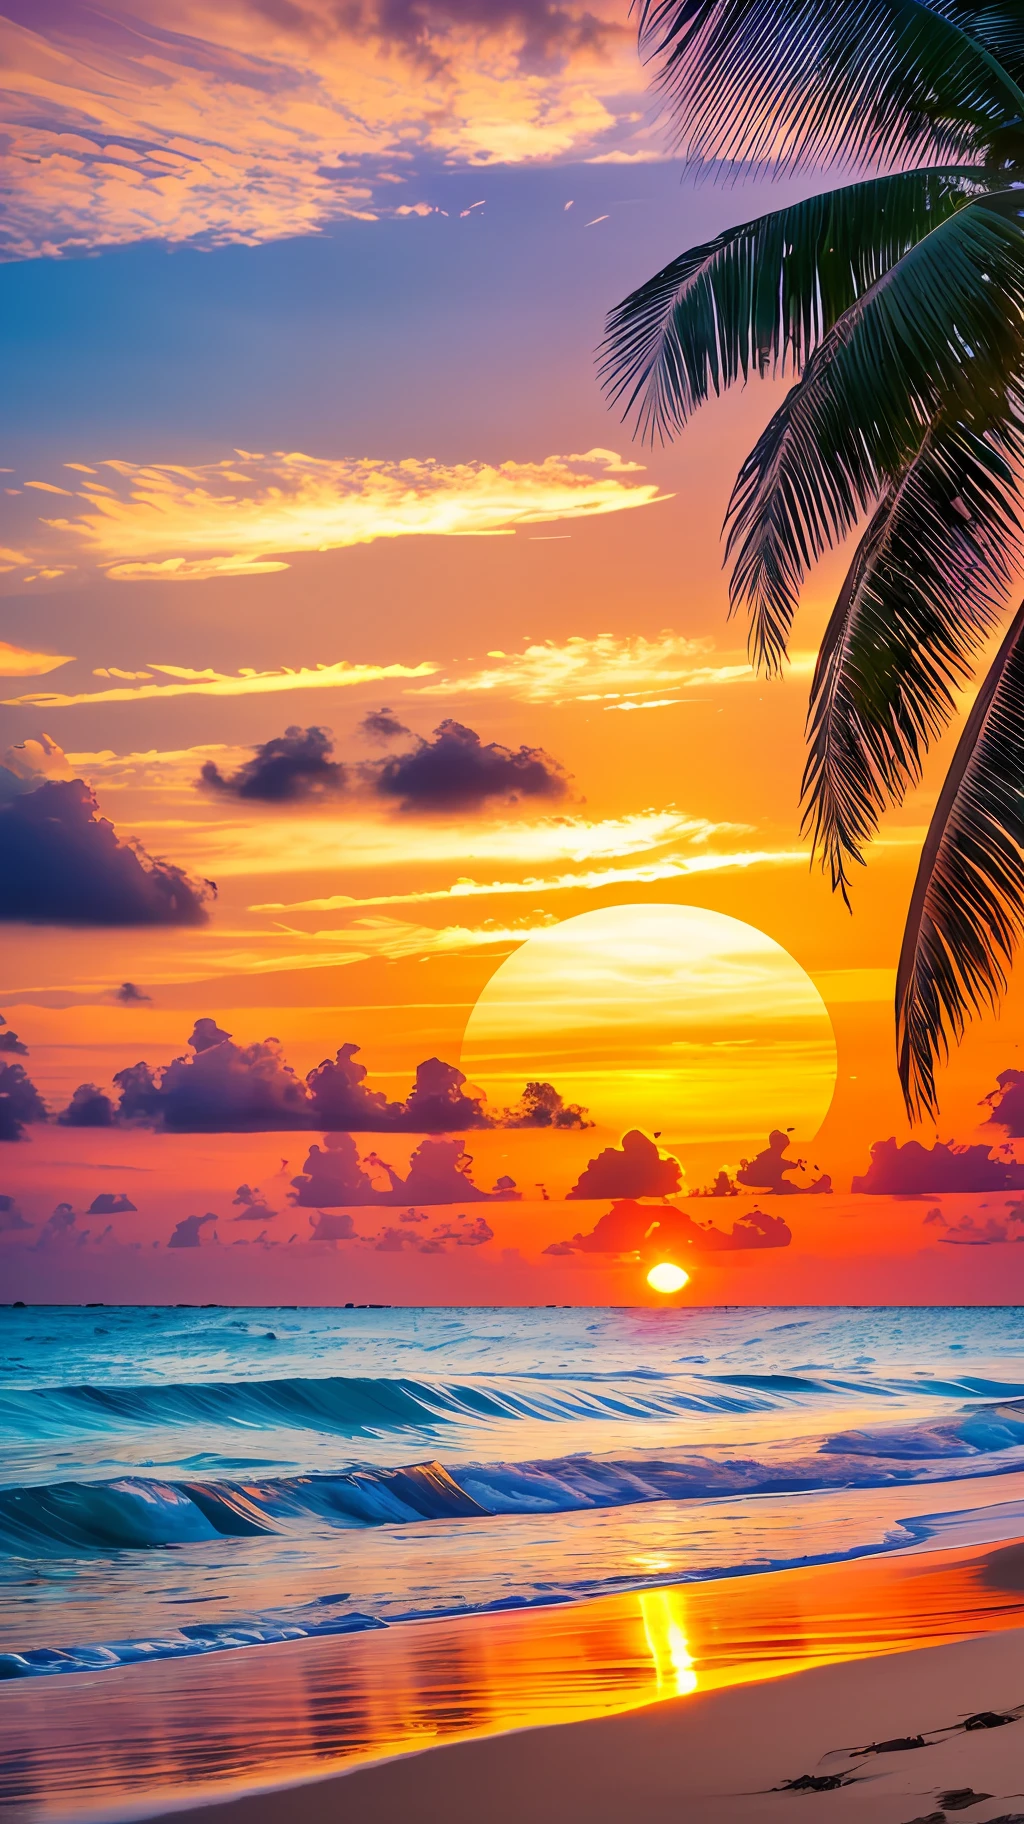 Erstellen Sie ein 4K 9:16 Bild, das einen atemberaubenden Sonnenaufgang an einem tropischen Strand zeigt, mit sanften Wellen und Palmen entlang der Küste. Die Farbpalette sollte lebendig sein und ein Gefühl der Erneuerung und positiven Energie vermitteln. --auto --s2